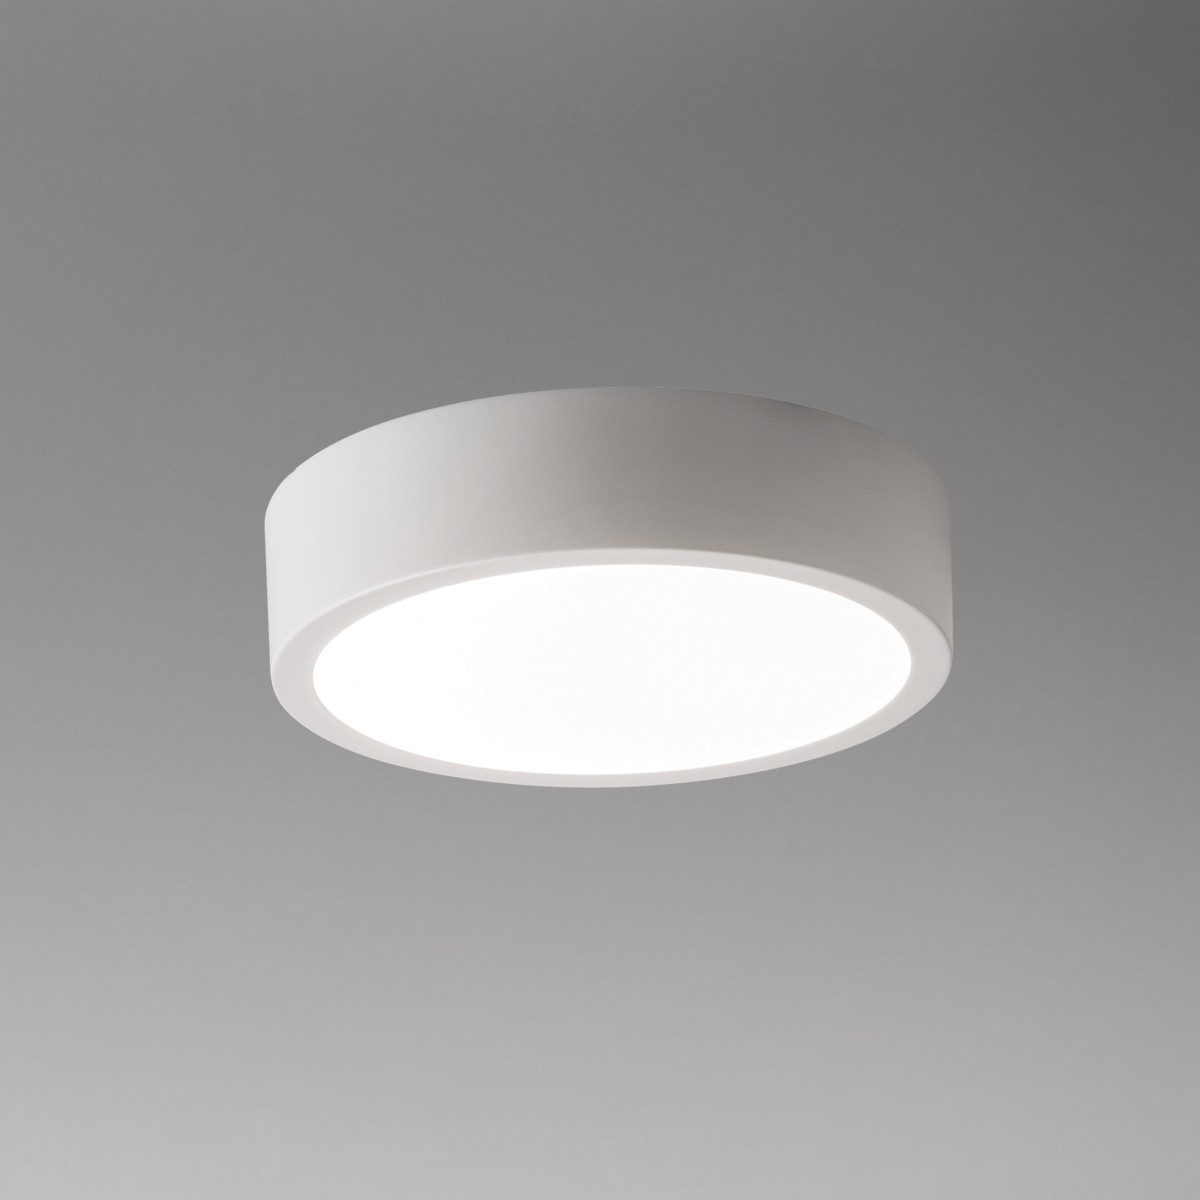 Lupia Licht Renox Deckenleuchte, Ø: 17 cm, weiß